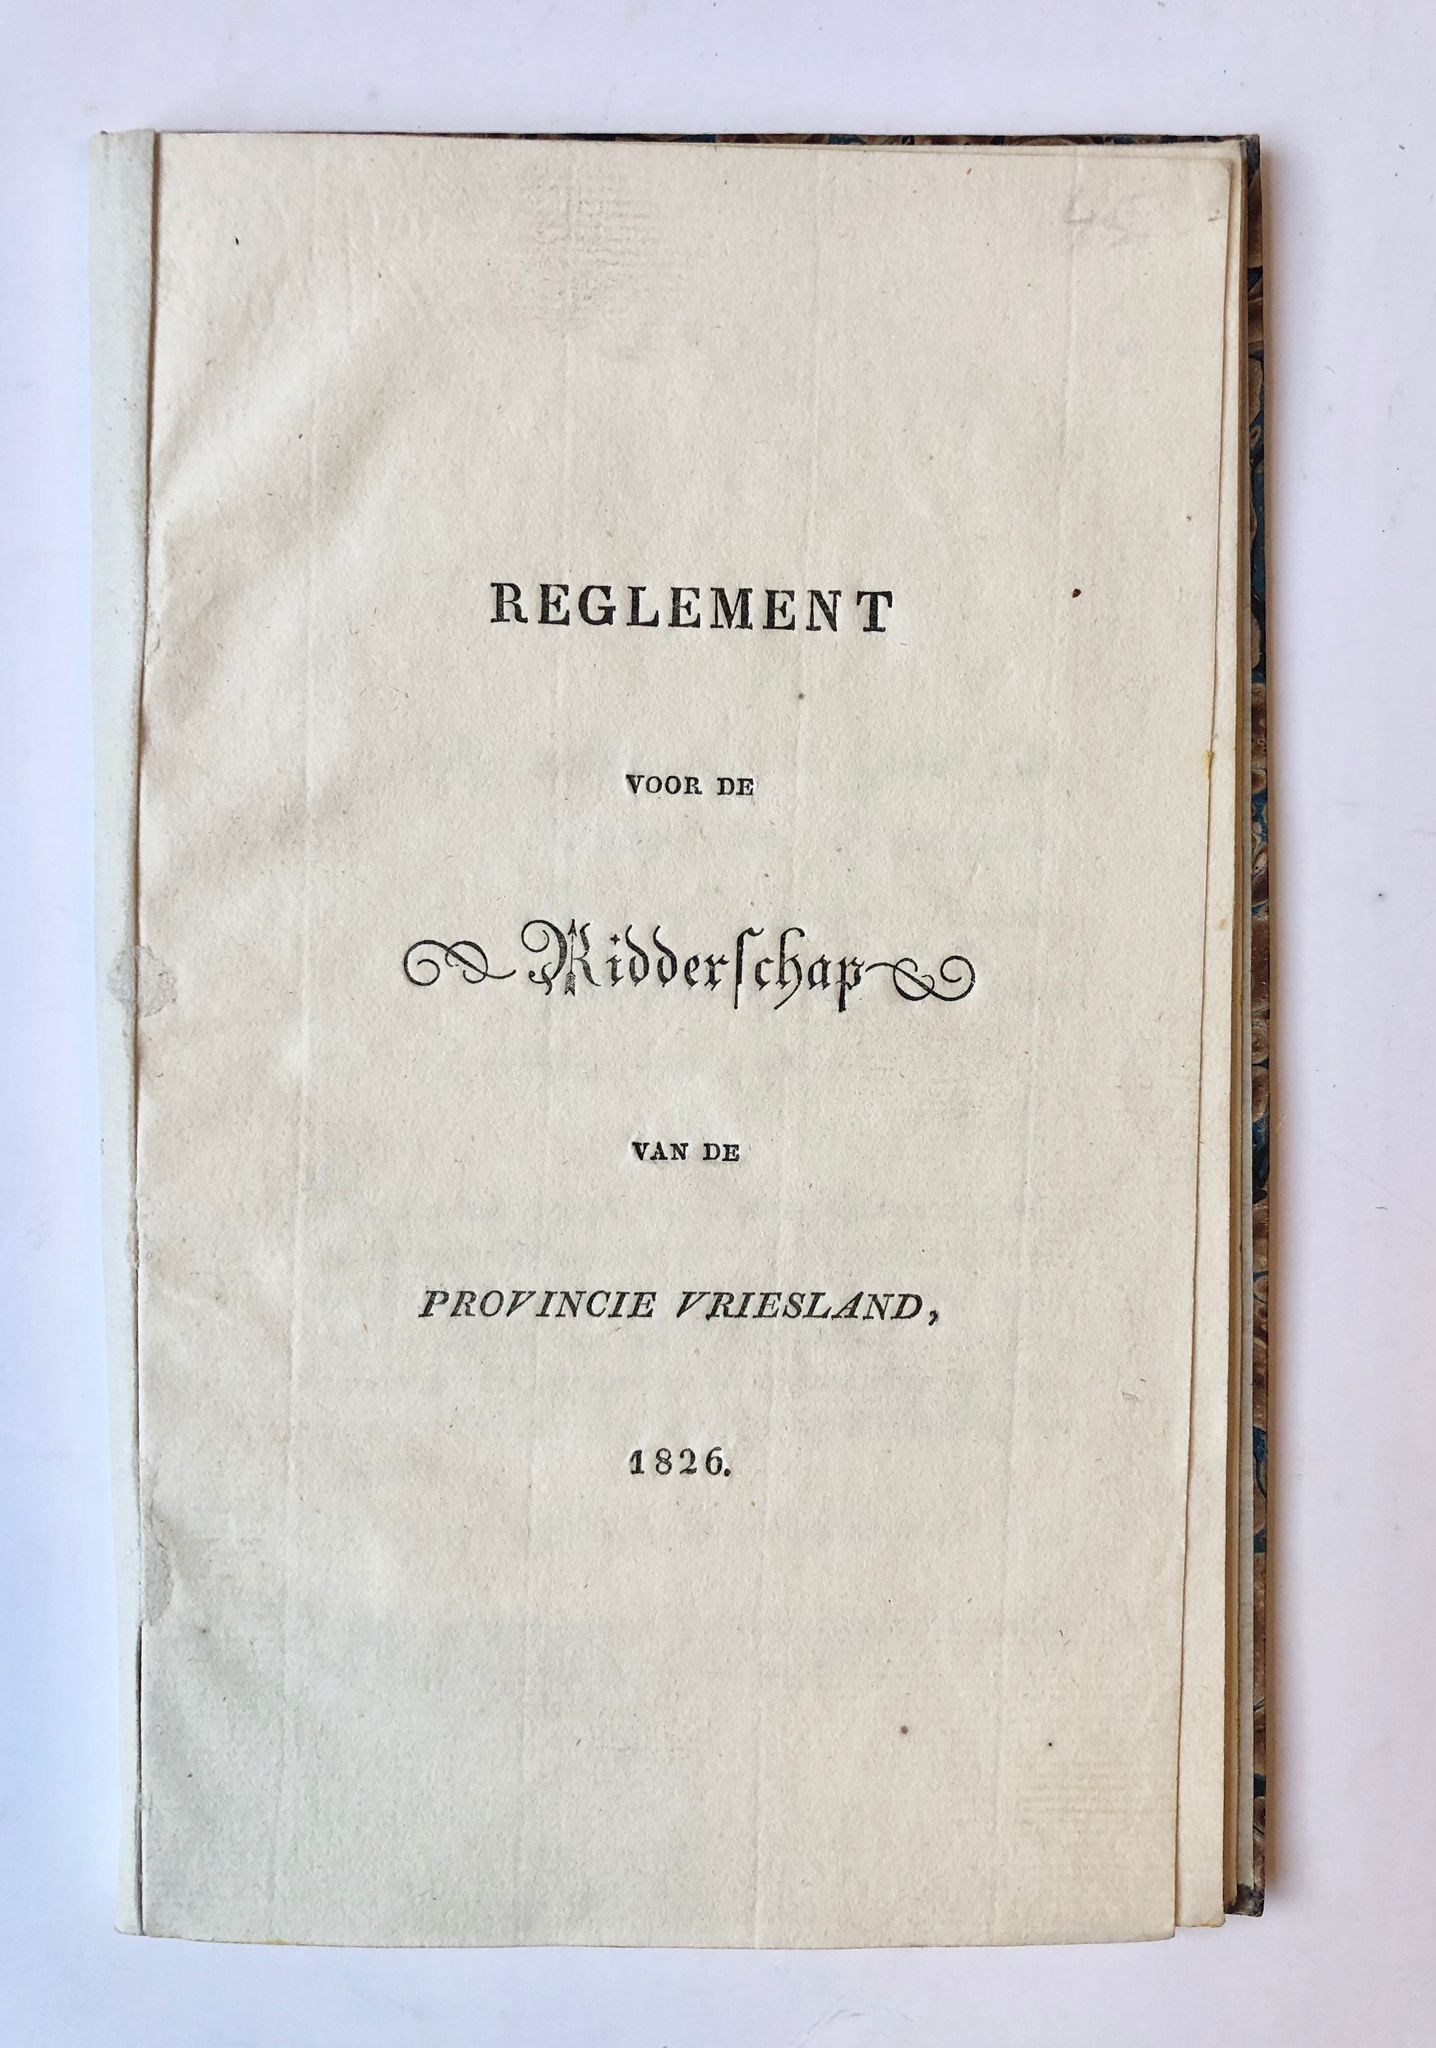 [Friesland 1826] Reglement voor de Ridderschap van de Provincie Vriesland, [s.l., s.n.],1826, 15 pp.